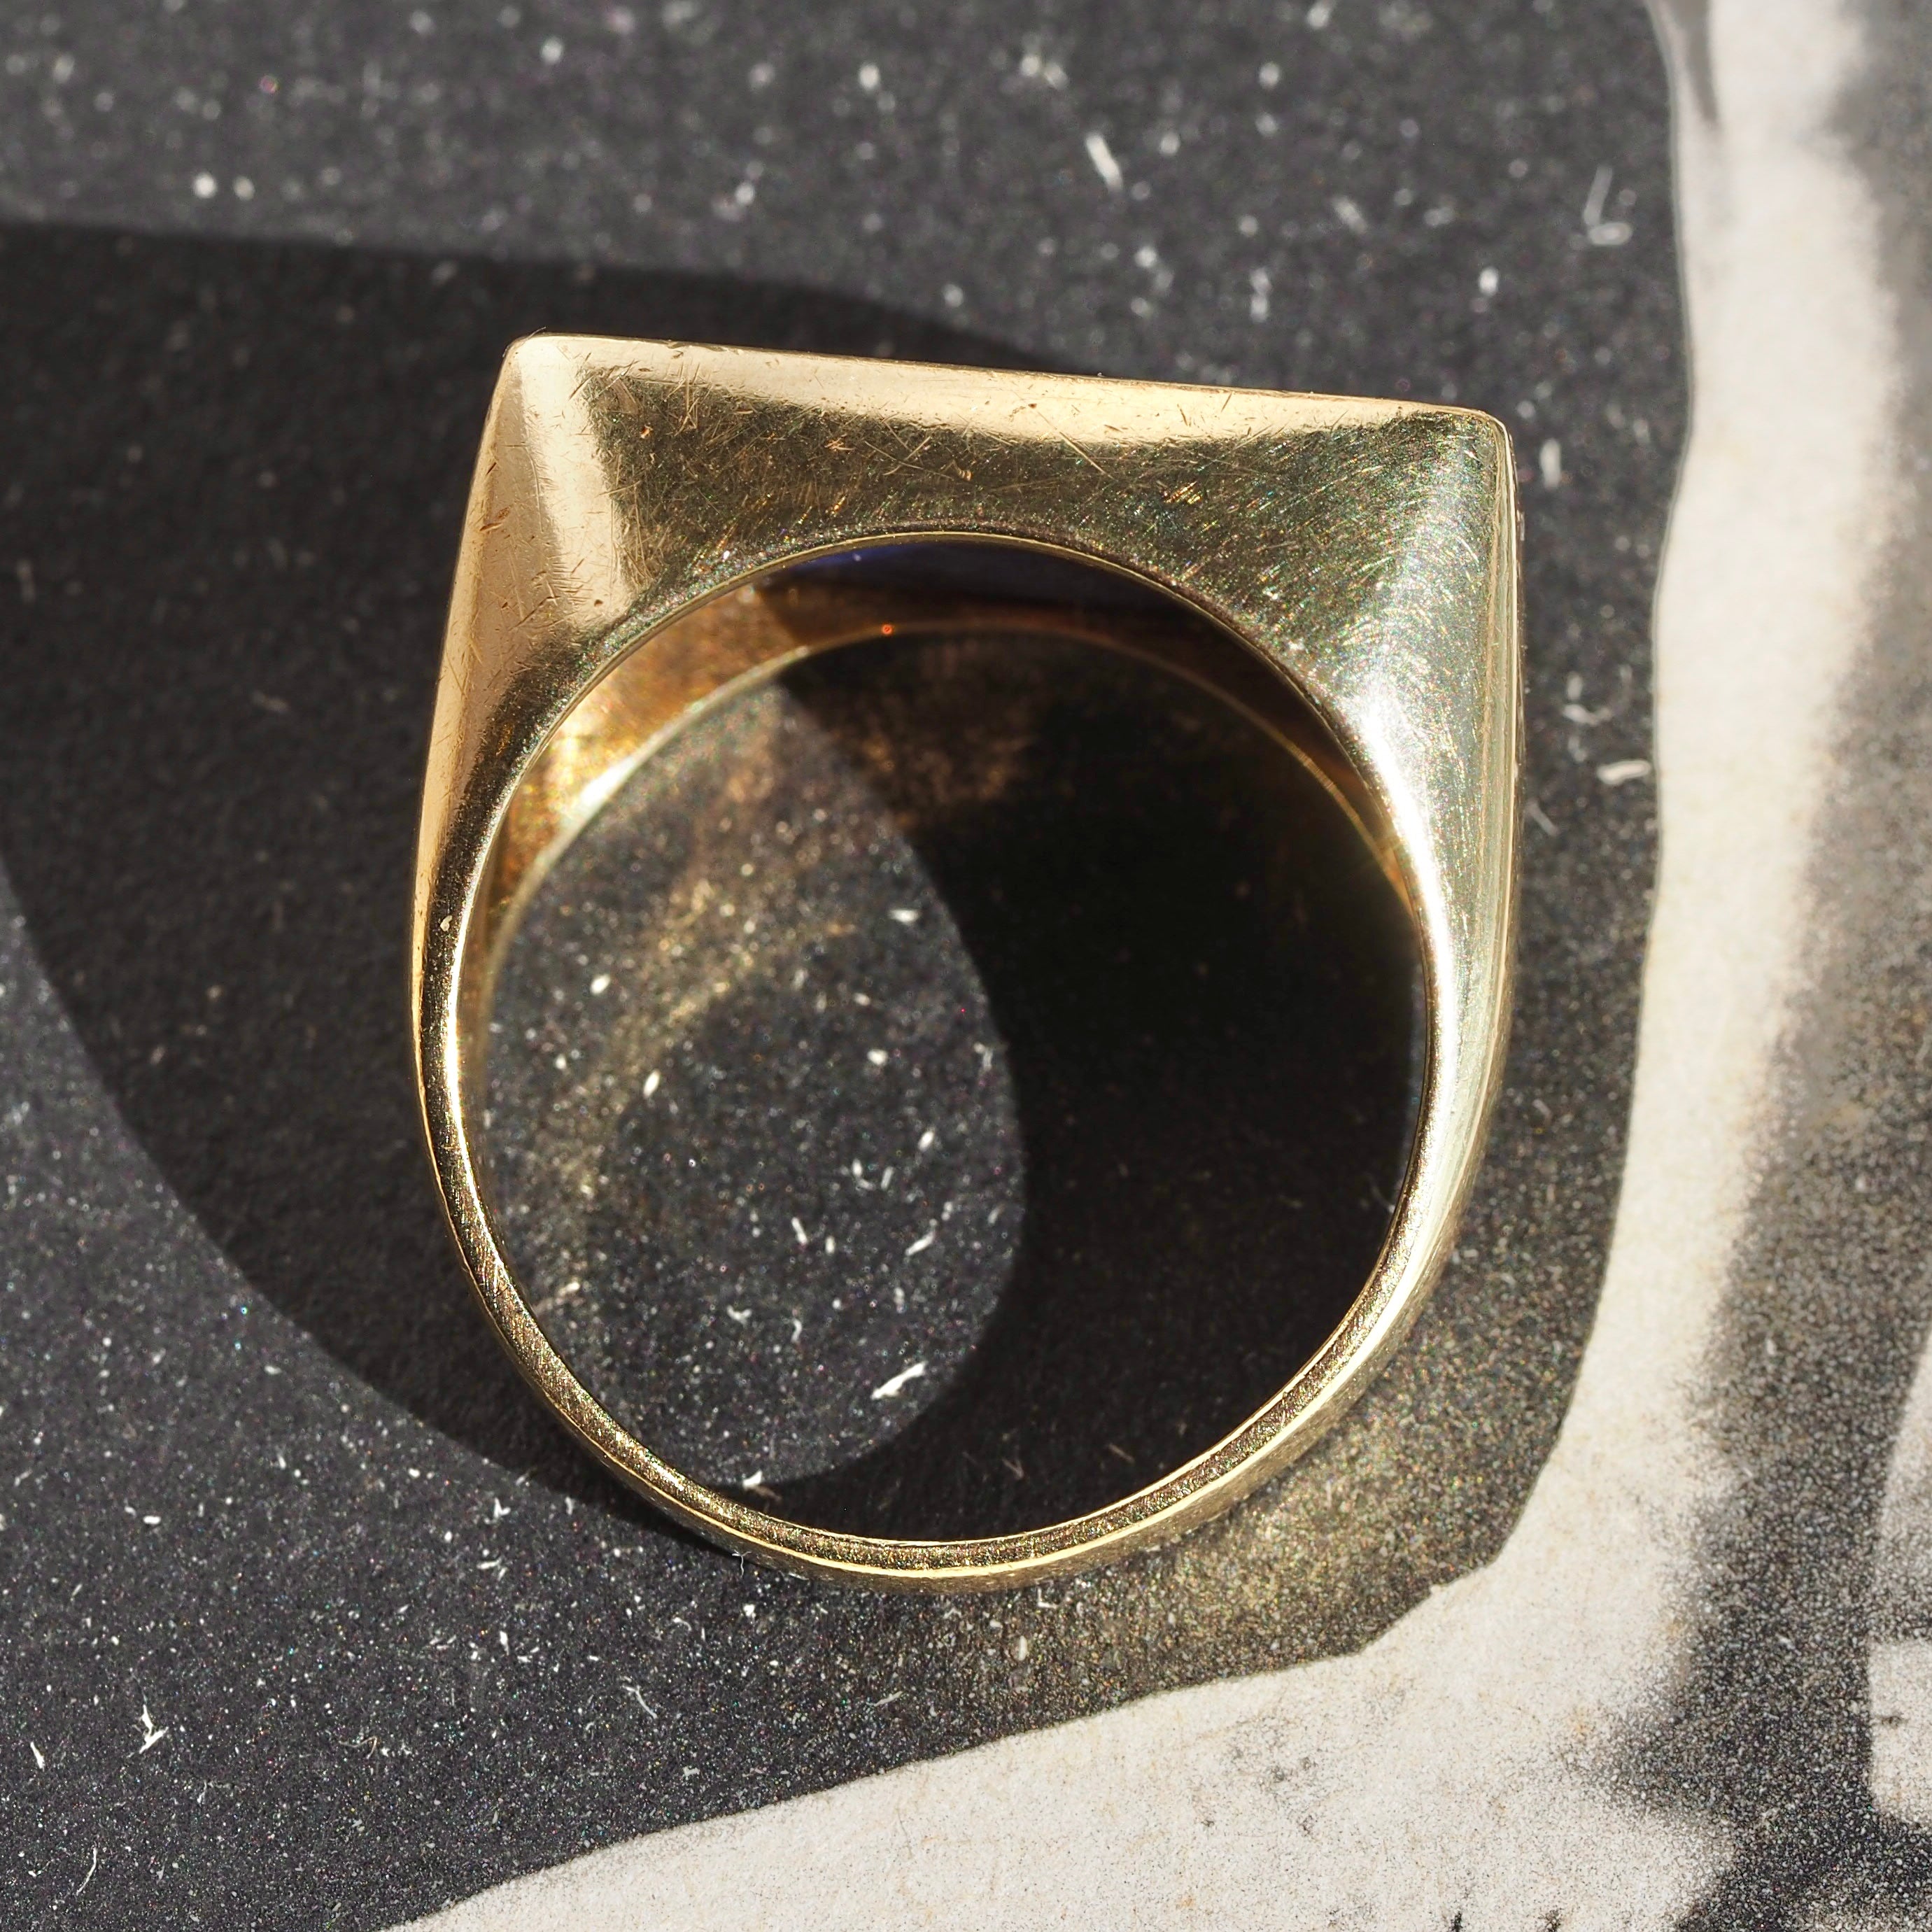 Vintage Modernist 18k Gold Lapis Ring